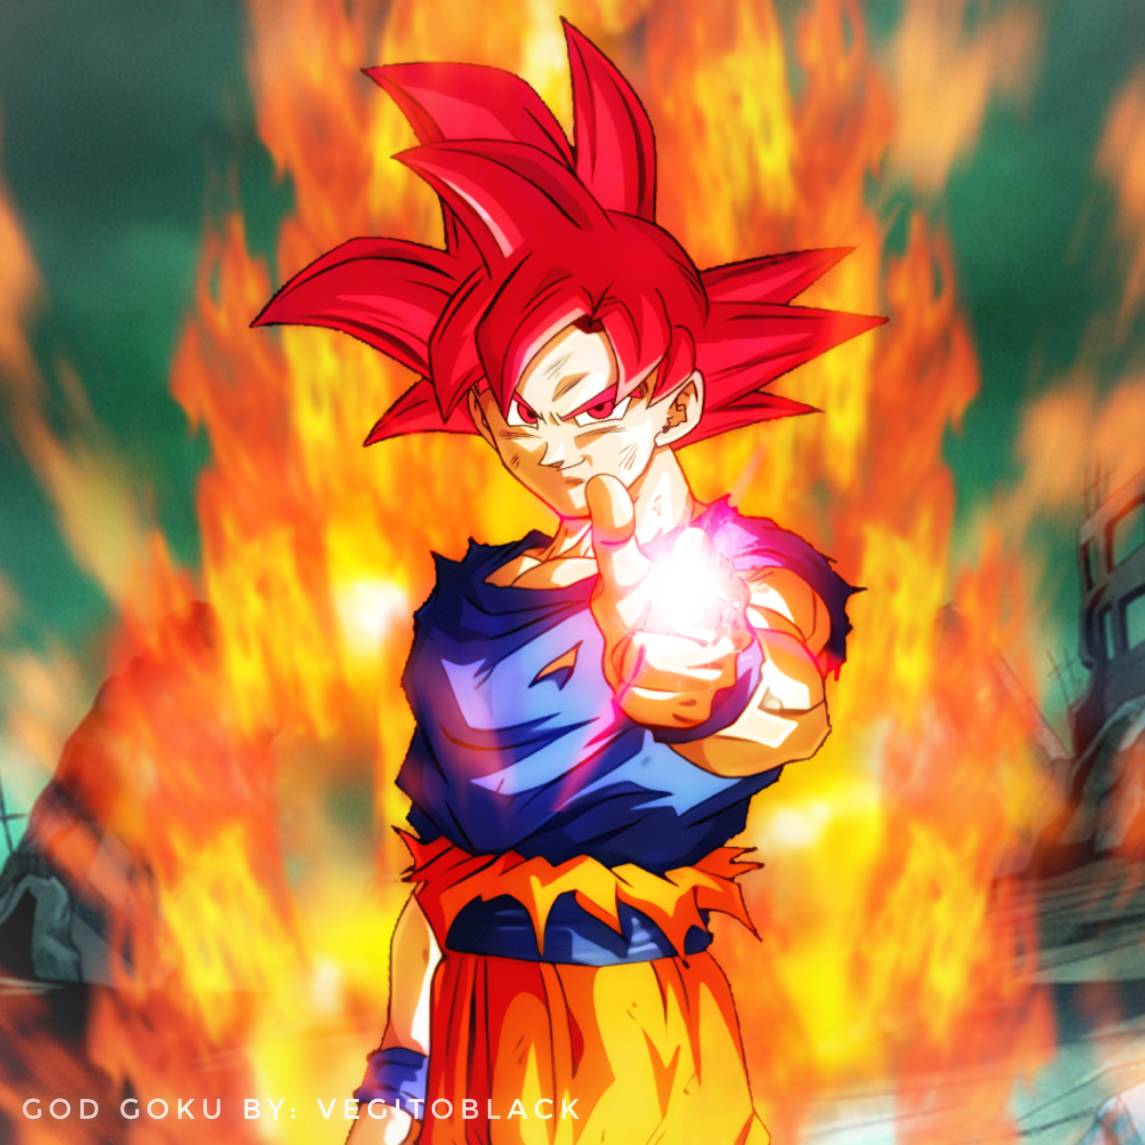 Super Saiyan 2 Goku with aura by vegitoblackgreen on DeviantArt